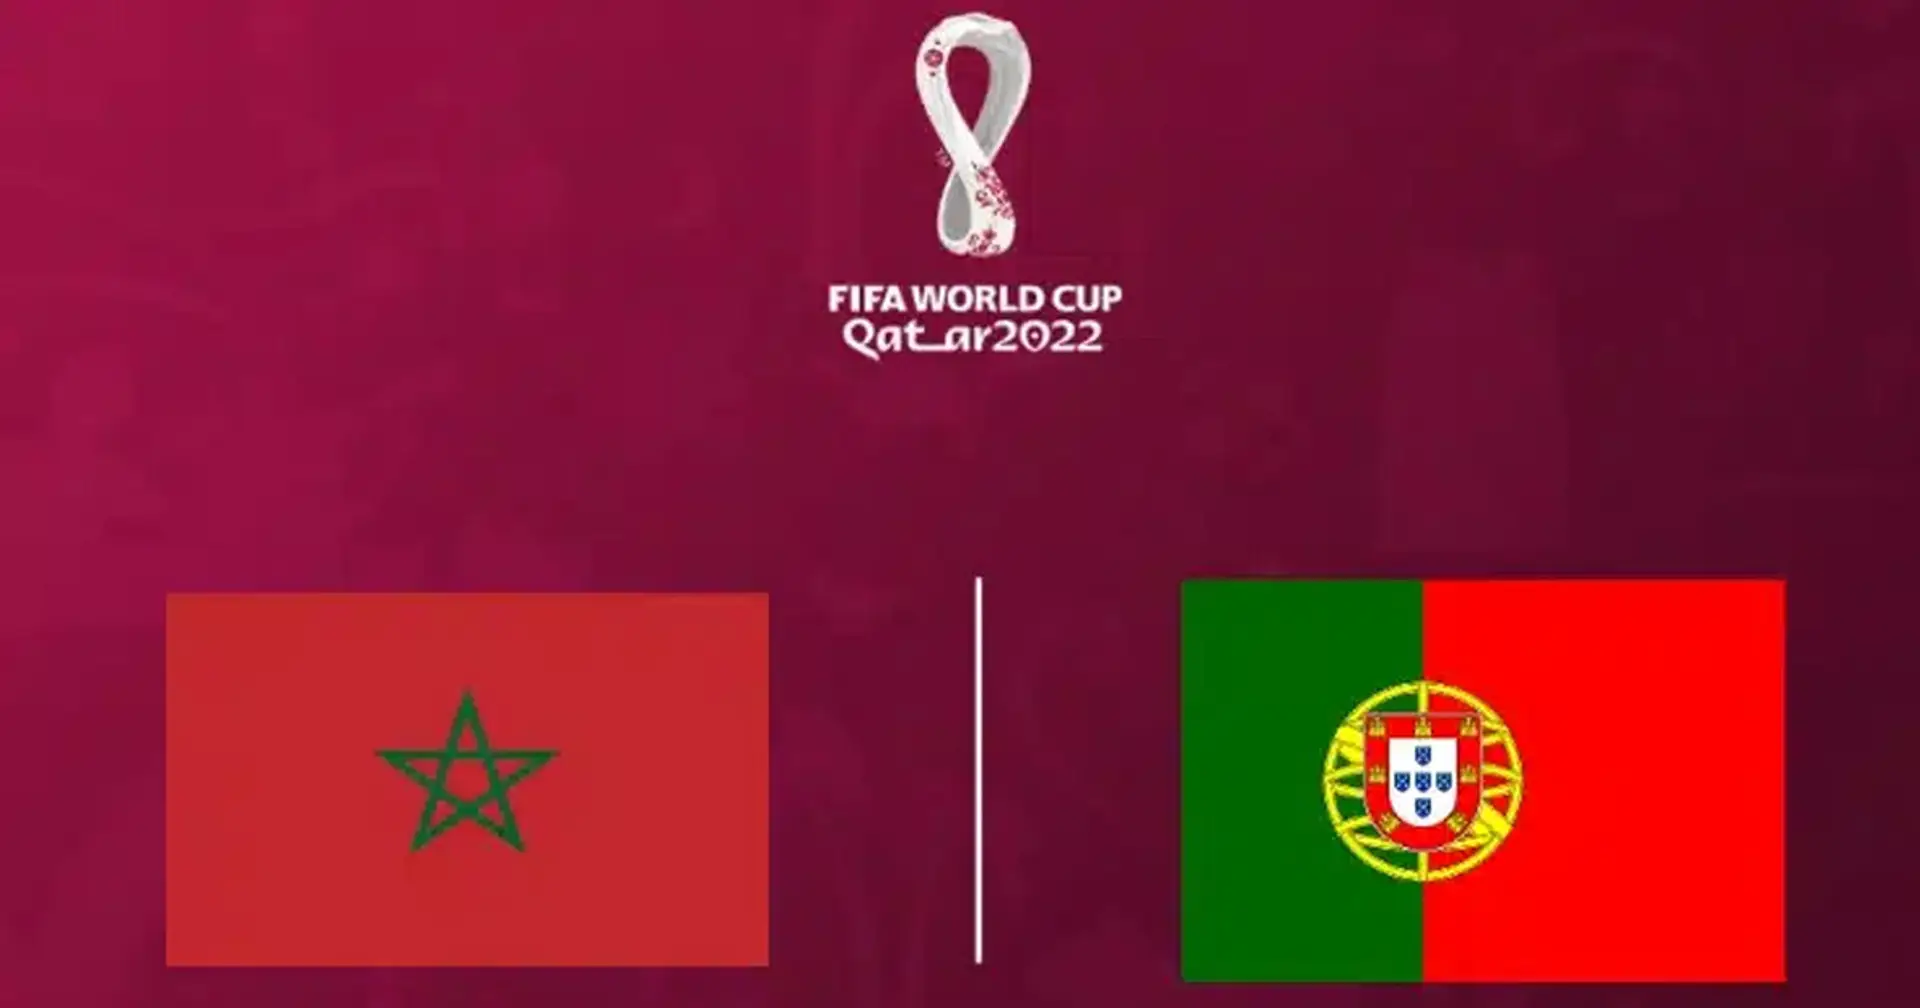 Marocco vs Portogallo: le formazioni ufficiali delle squadre per la partita della Coppa del Mondo Qatar 2022 